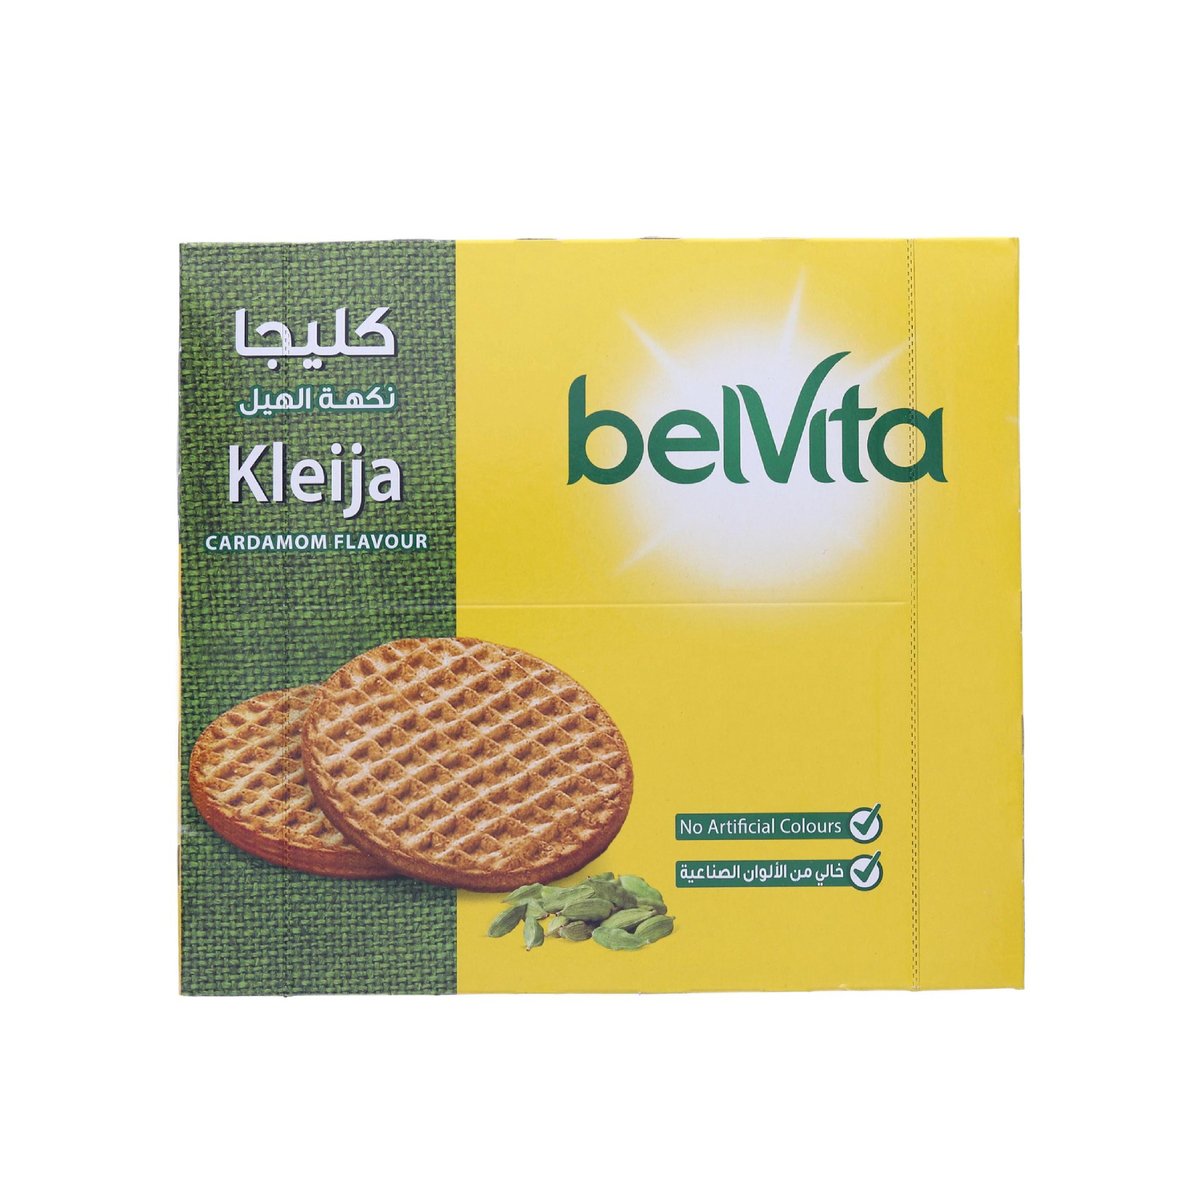 Belvita Kleija Cardamom Flavour Biscuit Value Pack 8 x 56 g 2 pkt